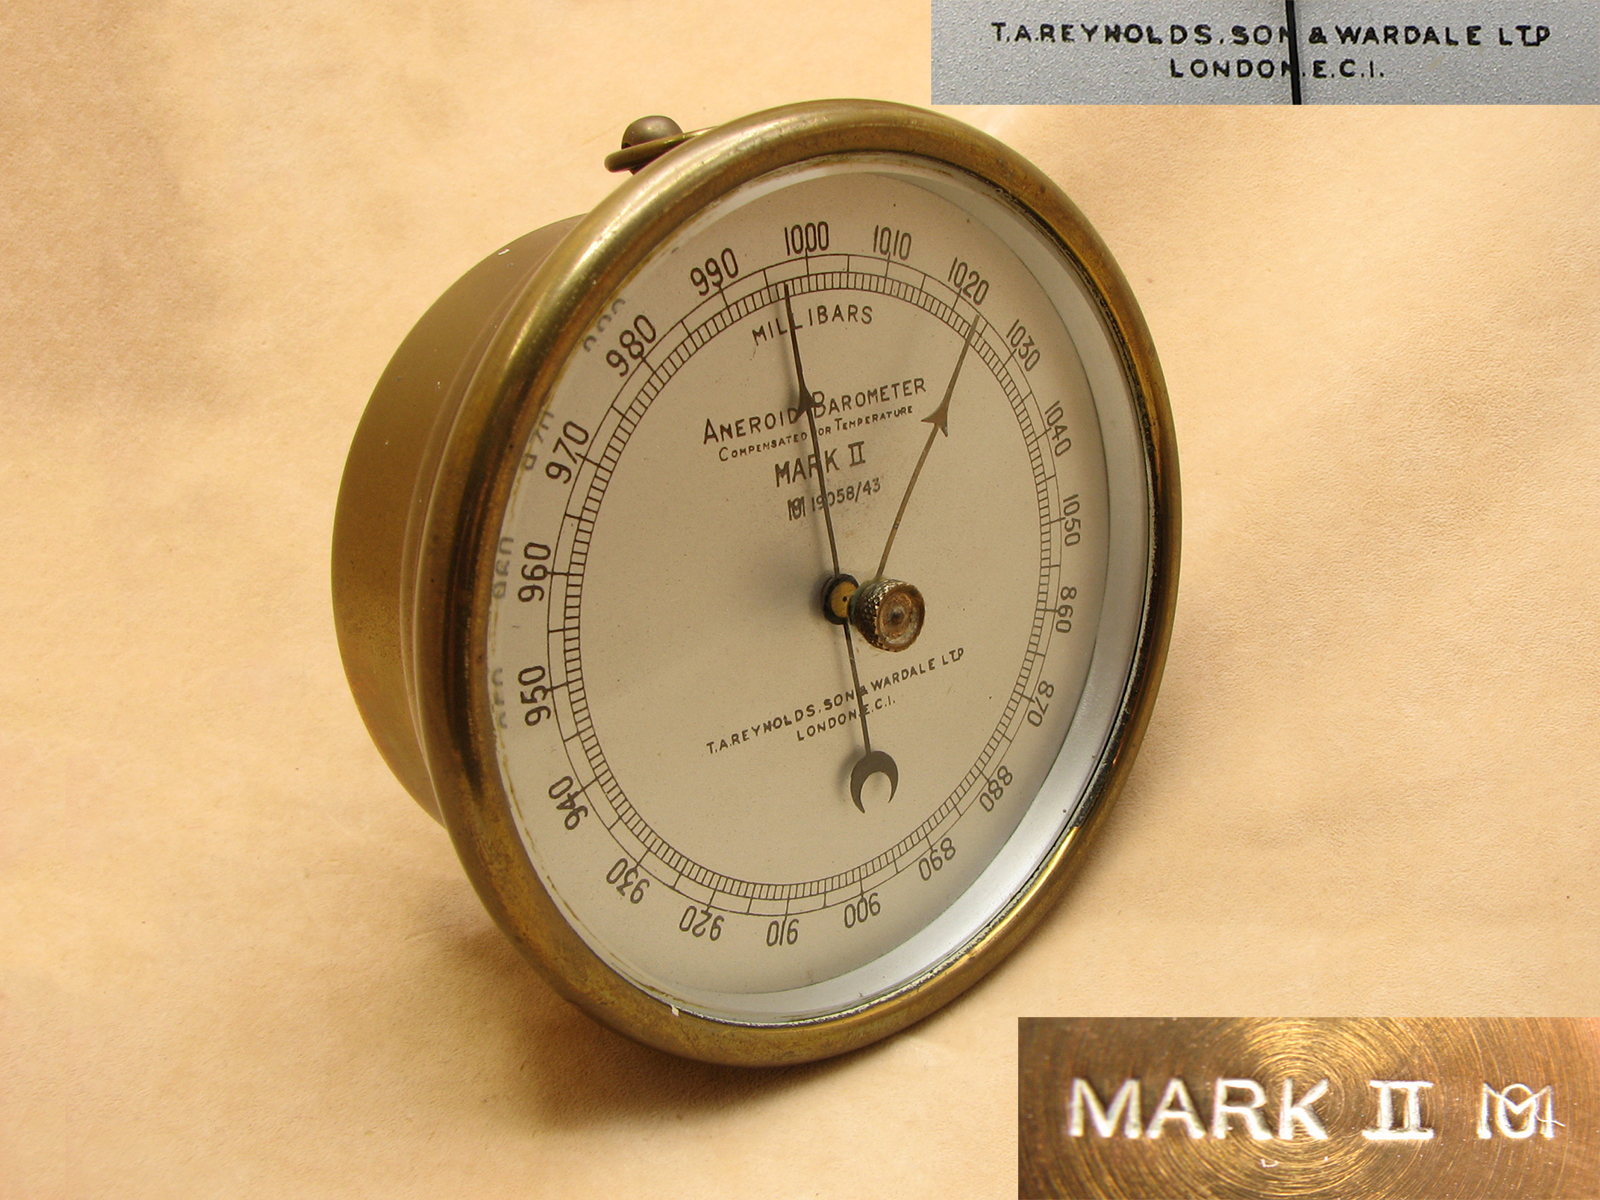 WW2 period Mark II Meteorological Office aneroid barometer by T.A REYNOLDS, SON & WARDALE LTD.